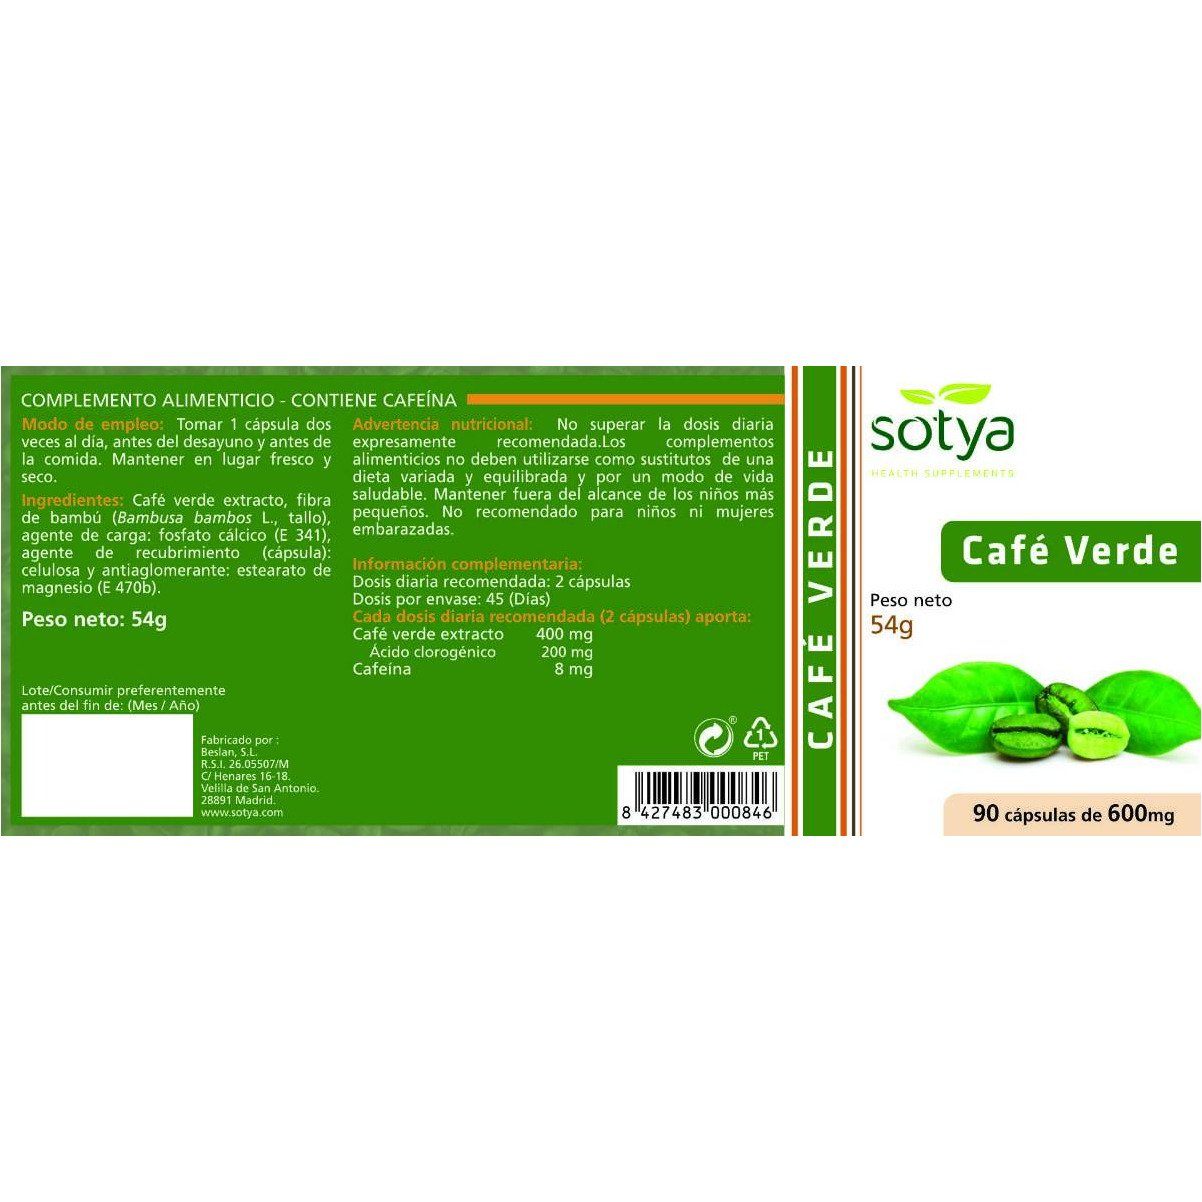 Cafe Verde 90 Capsulas | Sotya - Dietetica Ferrer